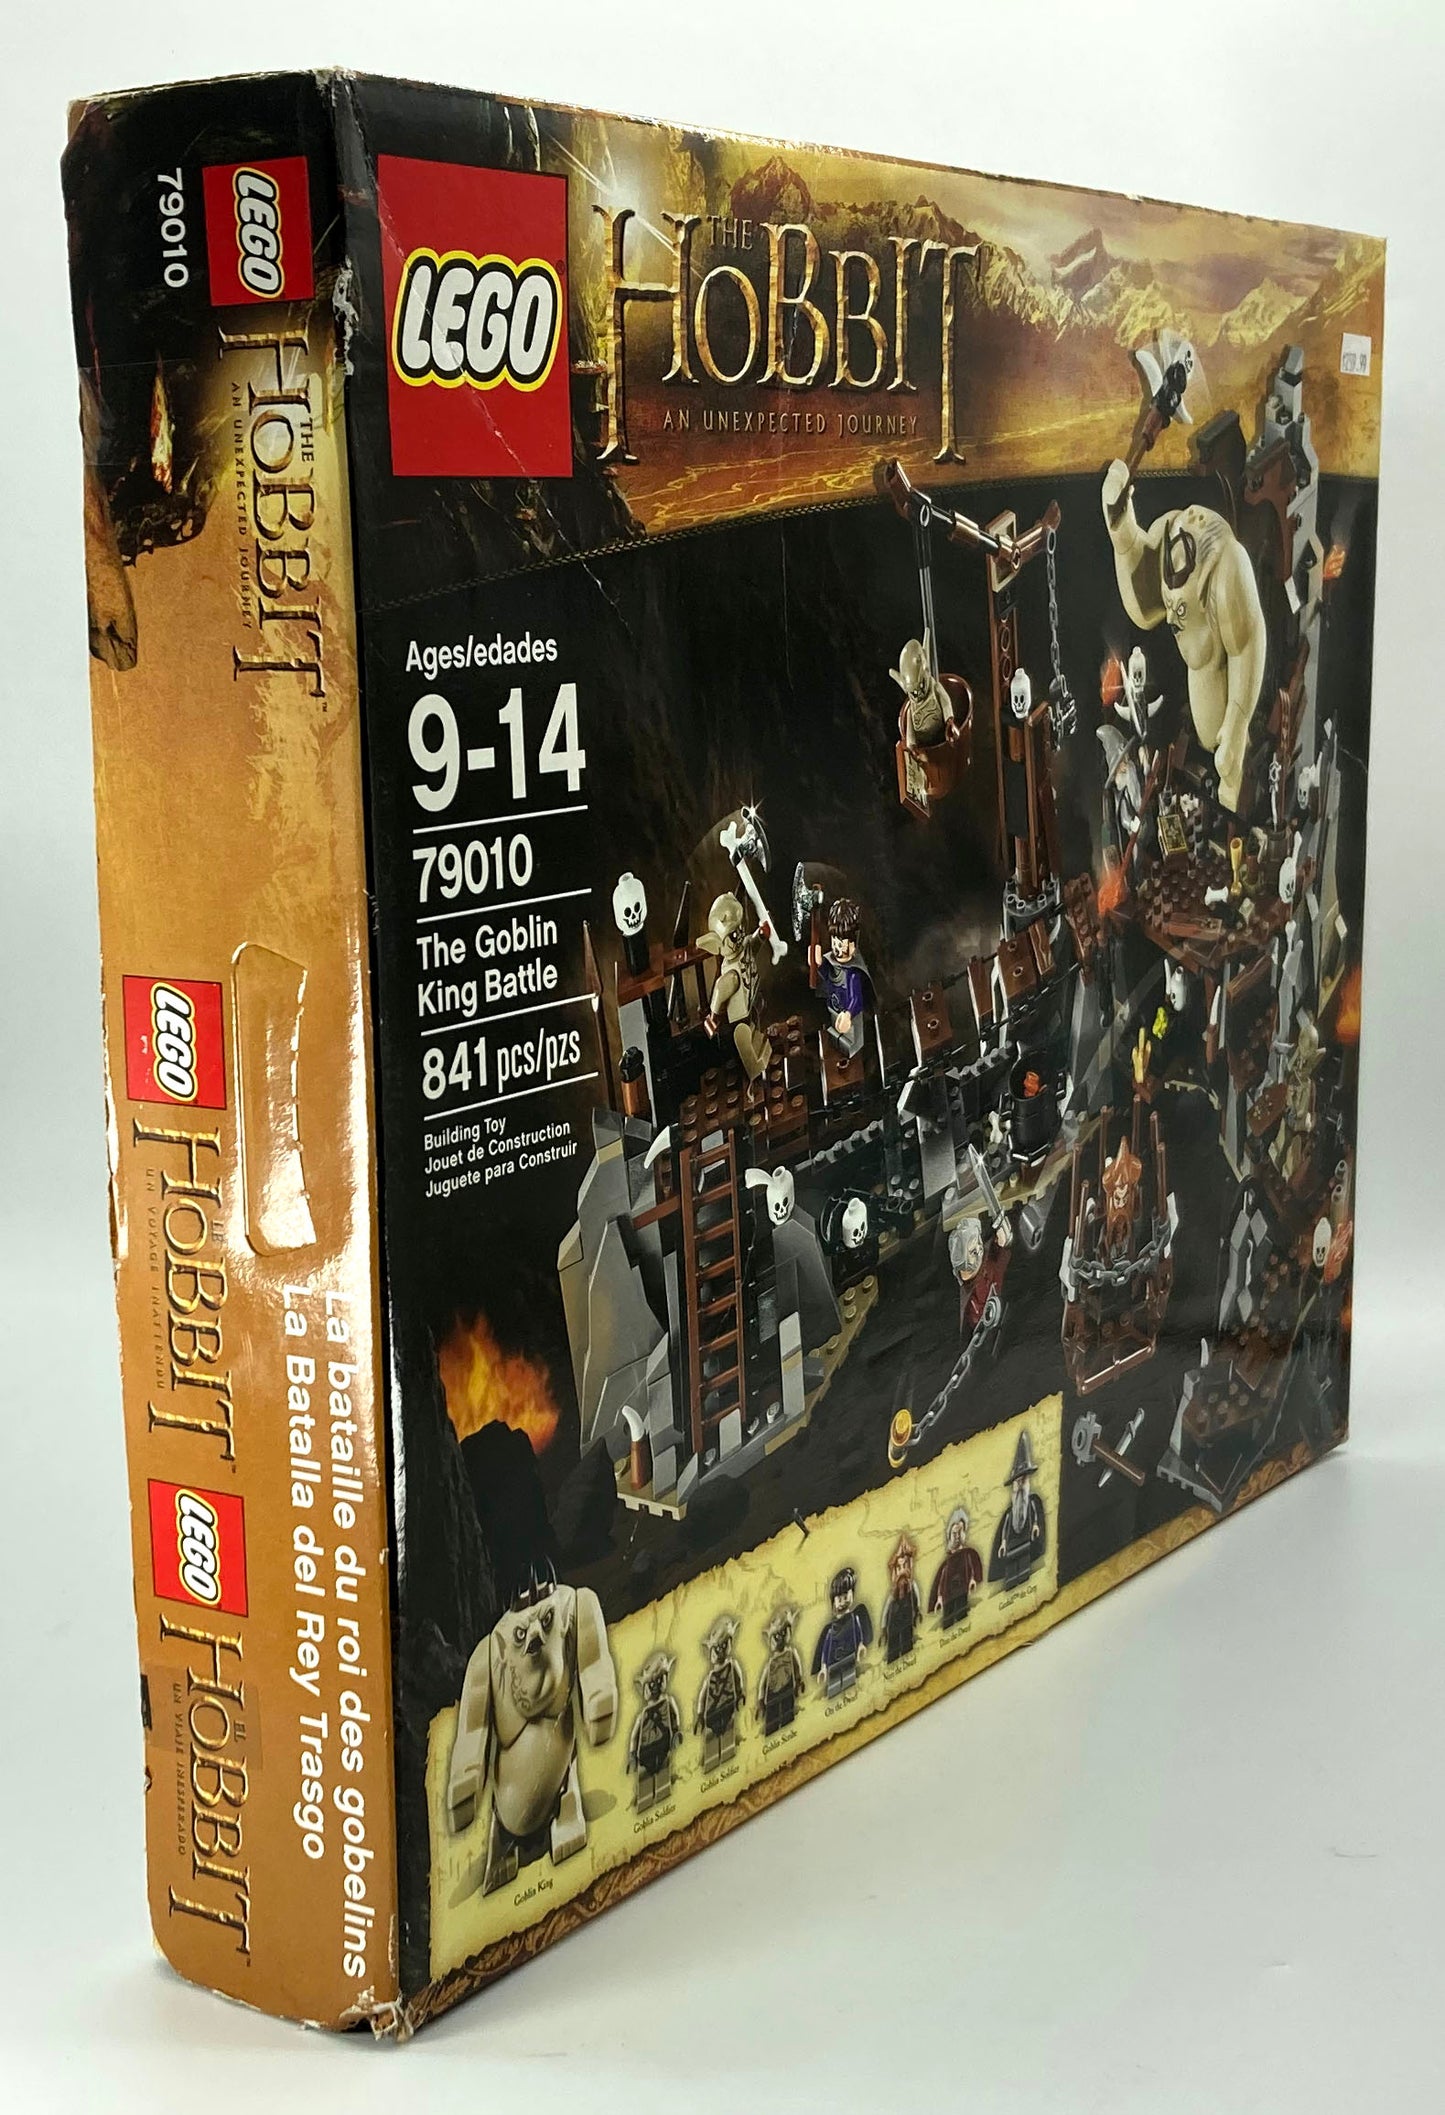 79010 The Goblin King Battle (RETIRED SET)